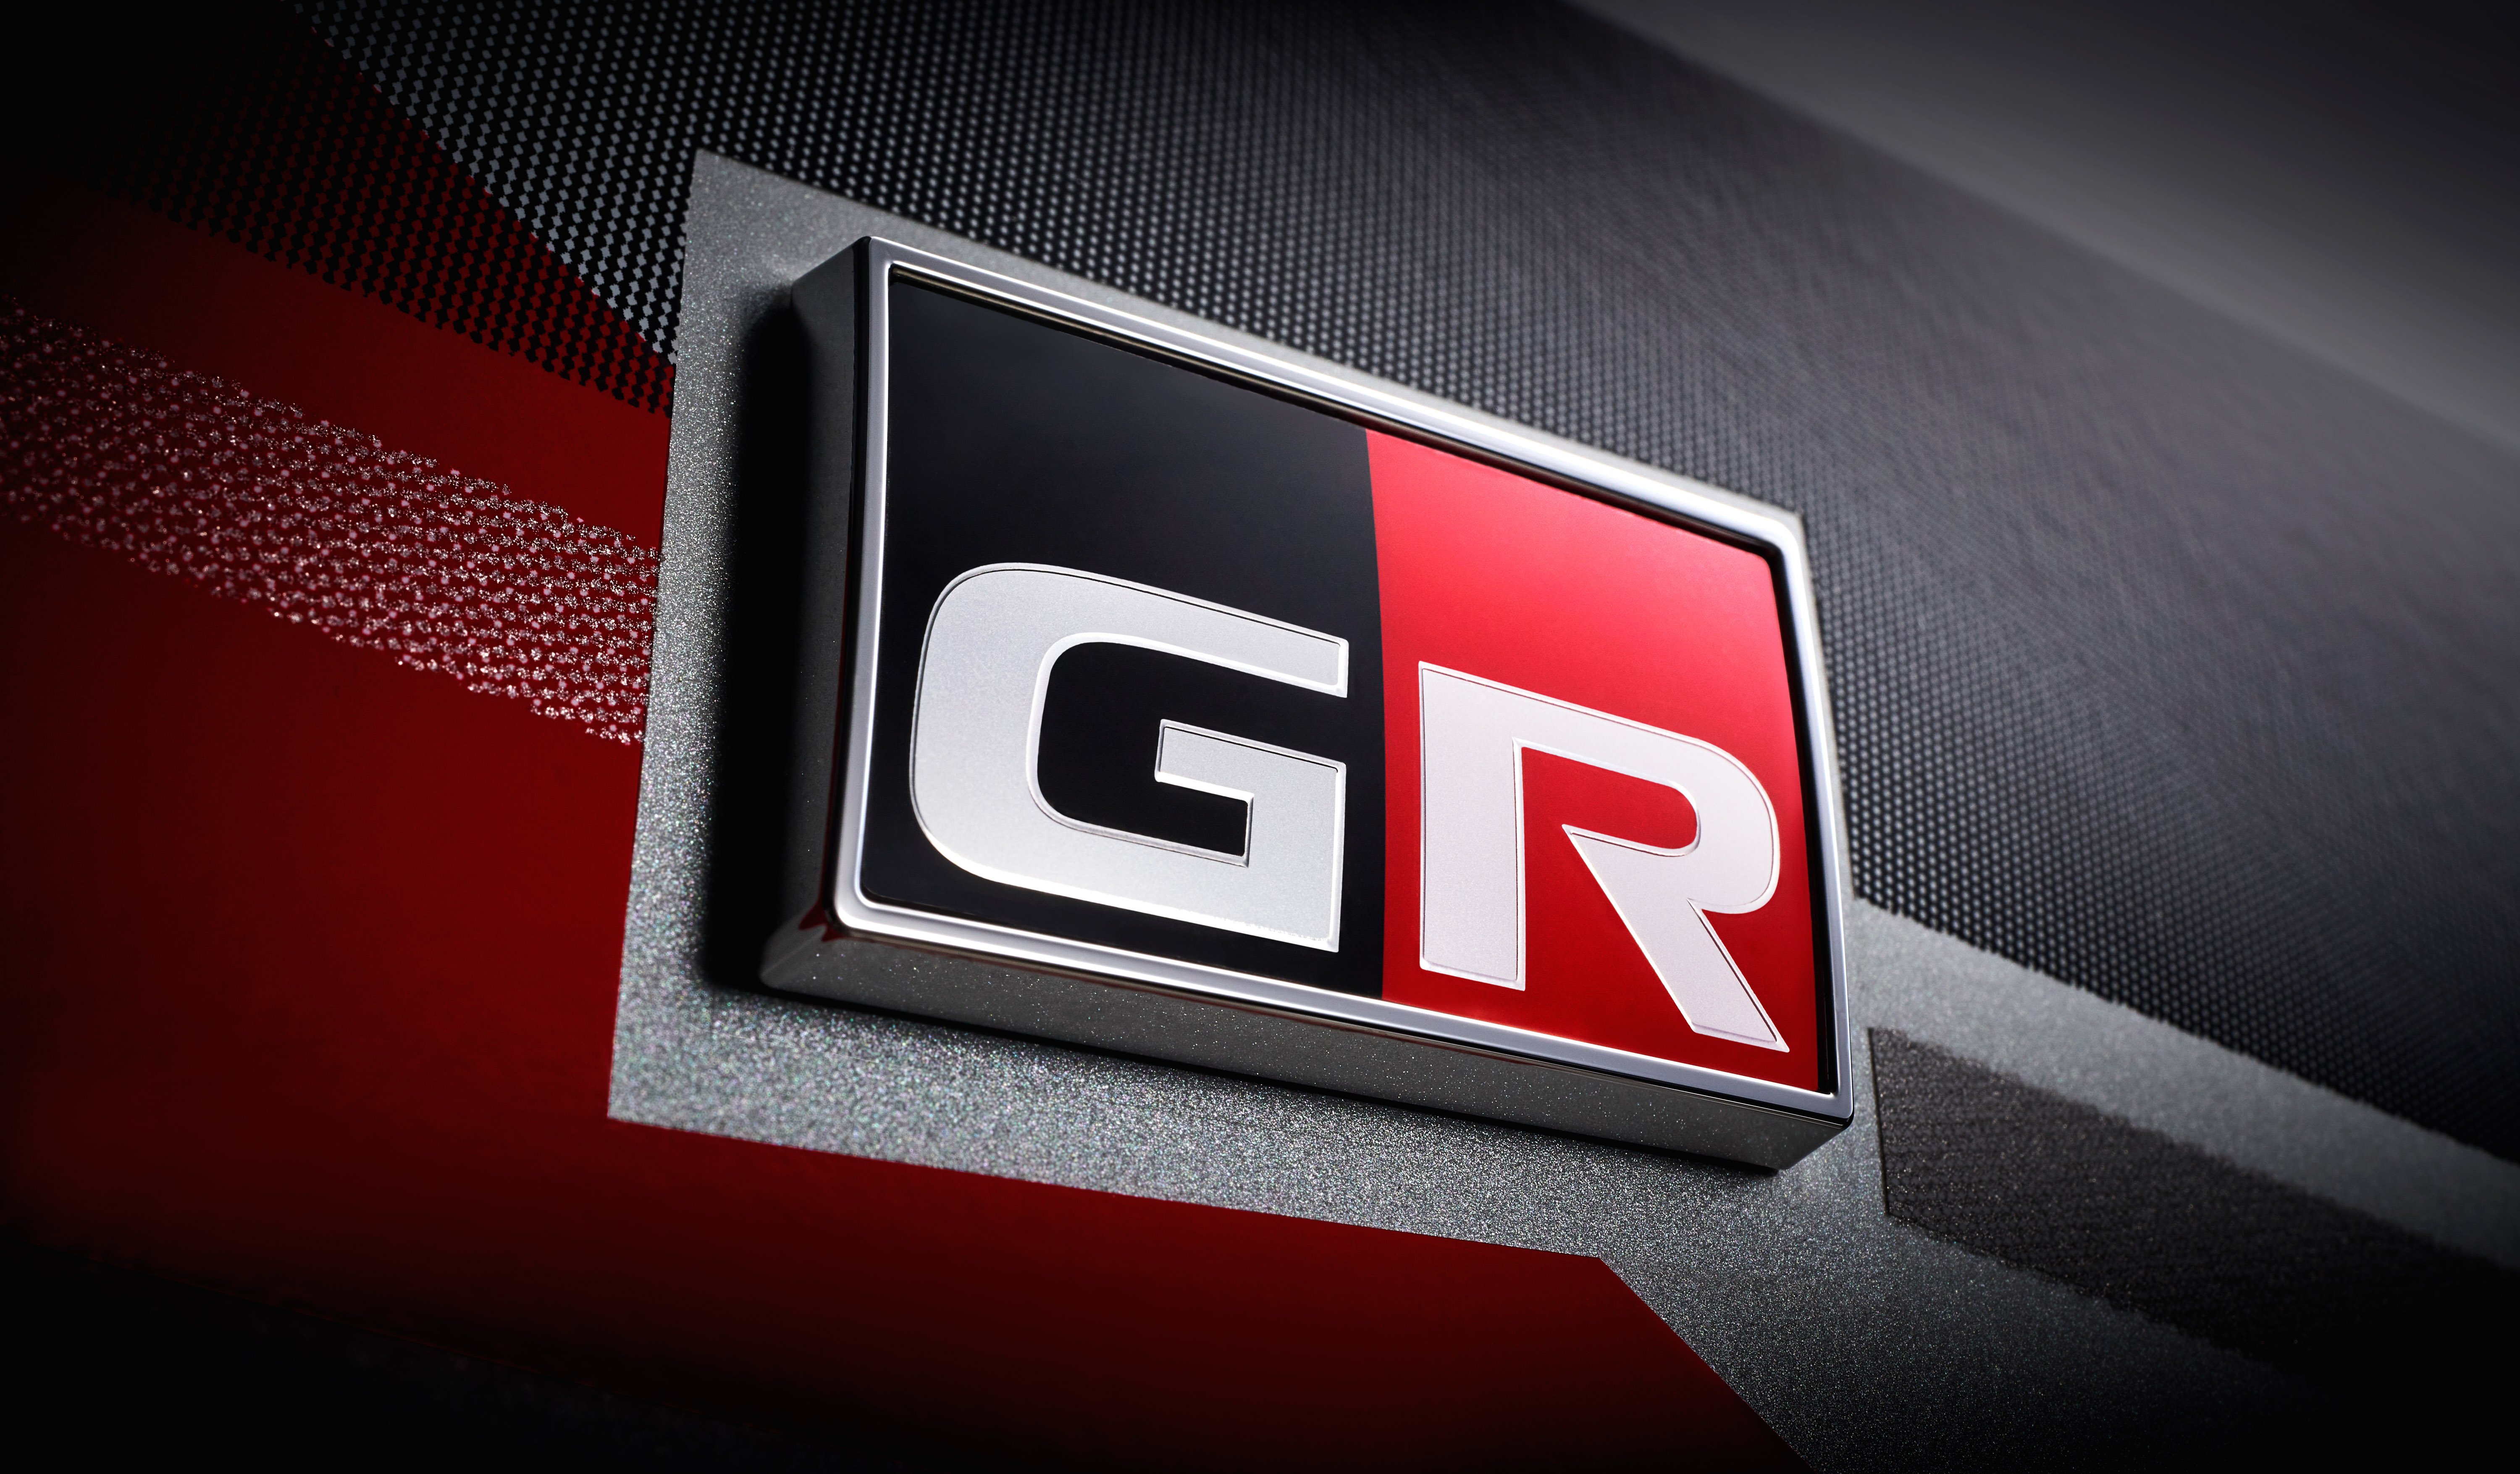 Toyota 高性能 GR 系列将扩充产品线，或为纯电动车型？